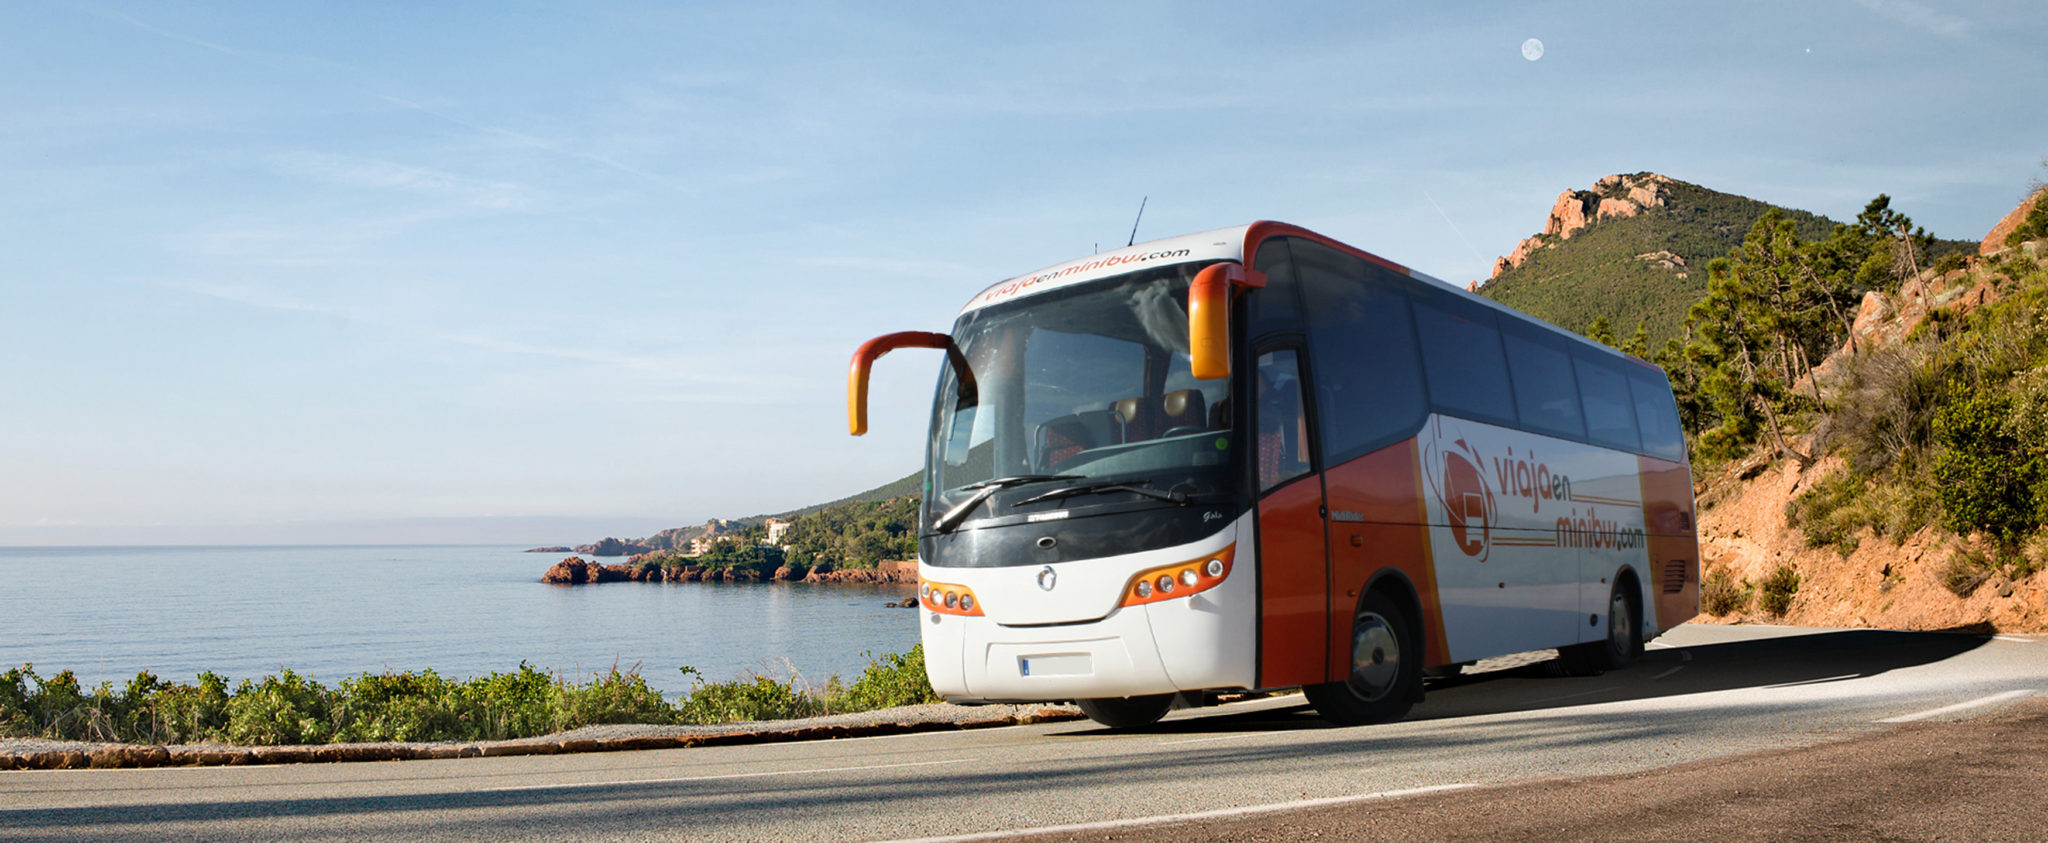 Alquiler autobús Granada